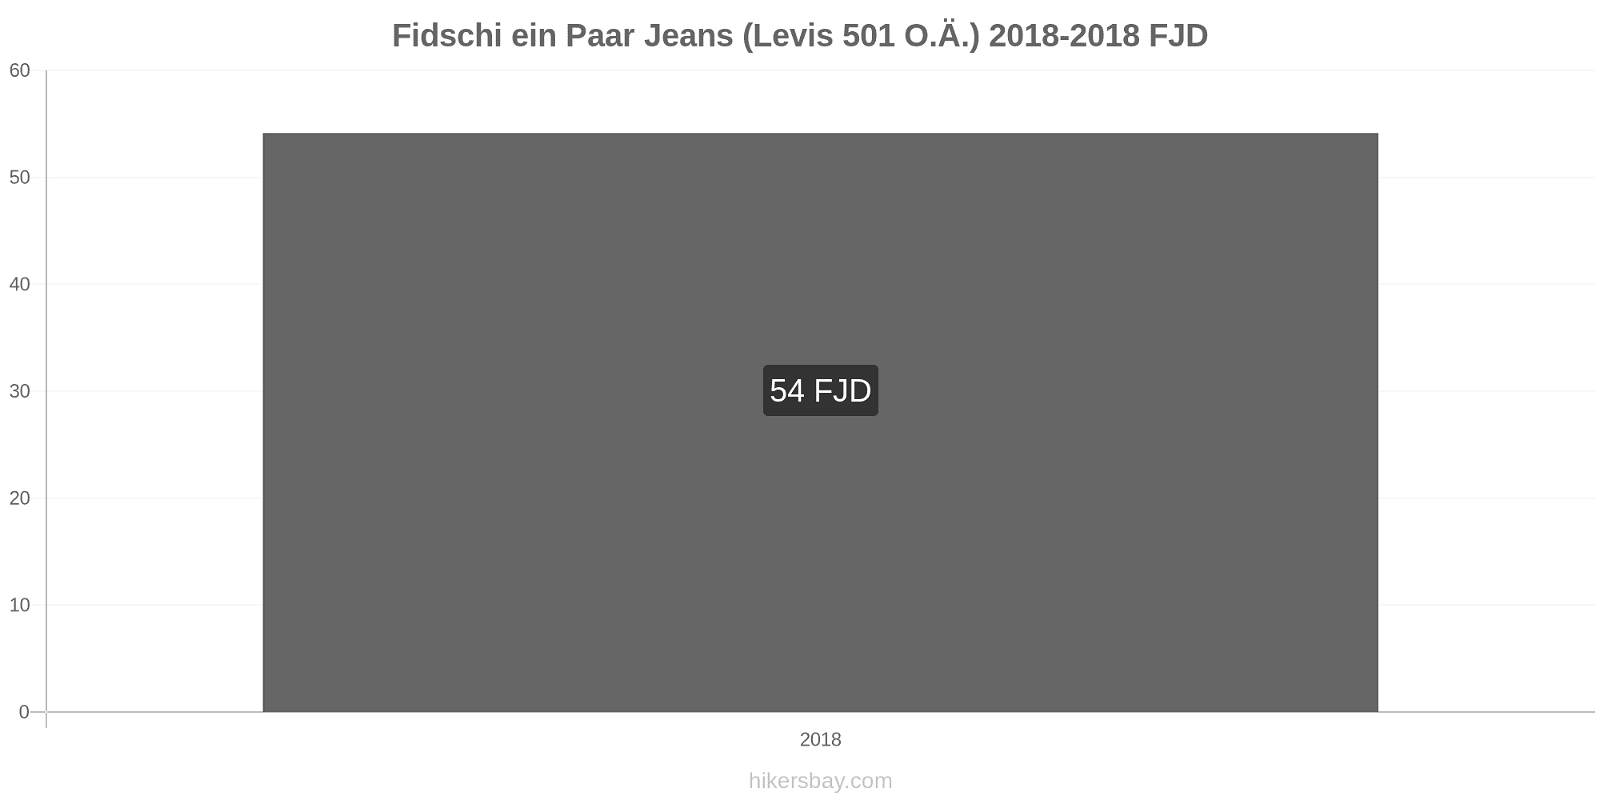 Fidschi Preisänderungen 1 Paar Jeans (Levis 501 oder ähnlich) hikersbay.com